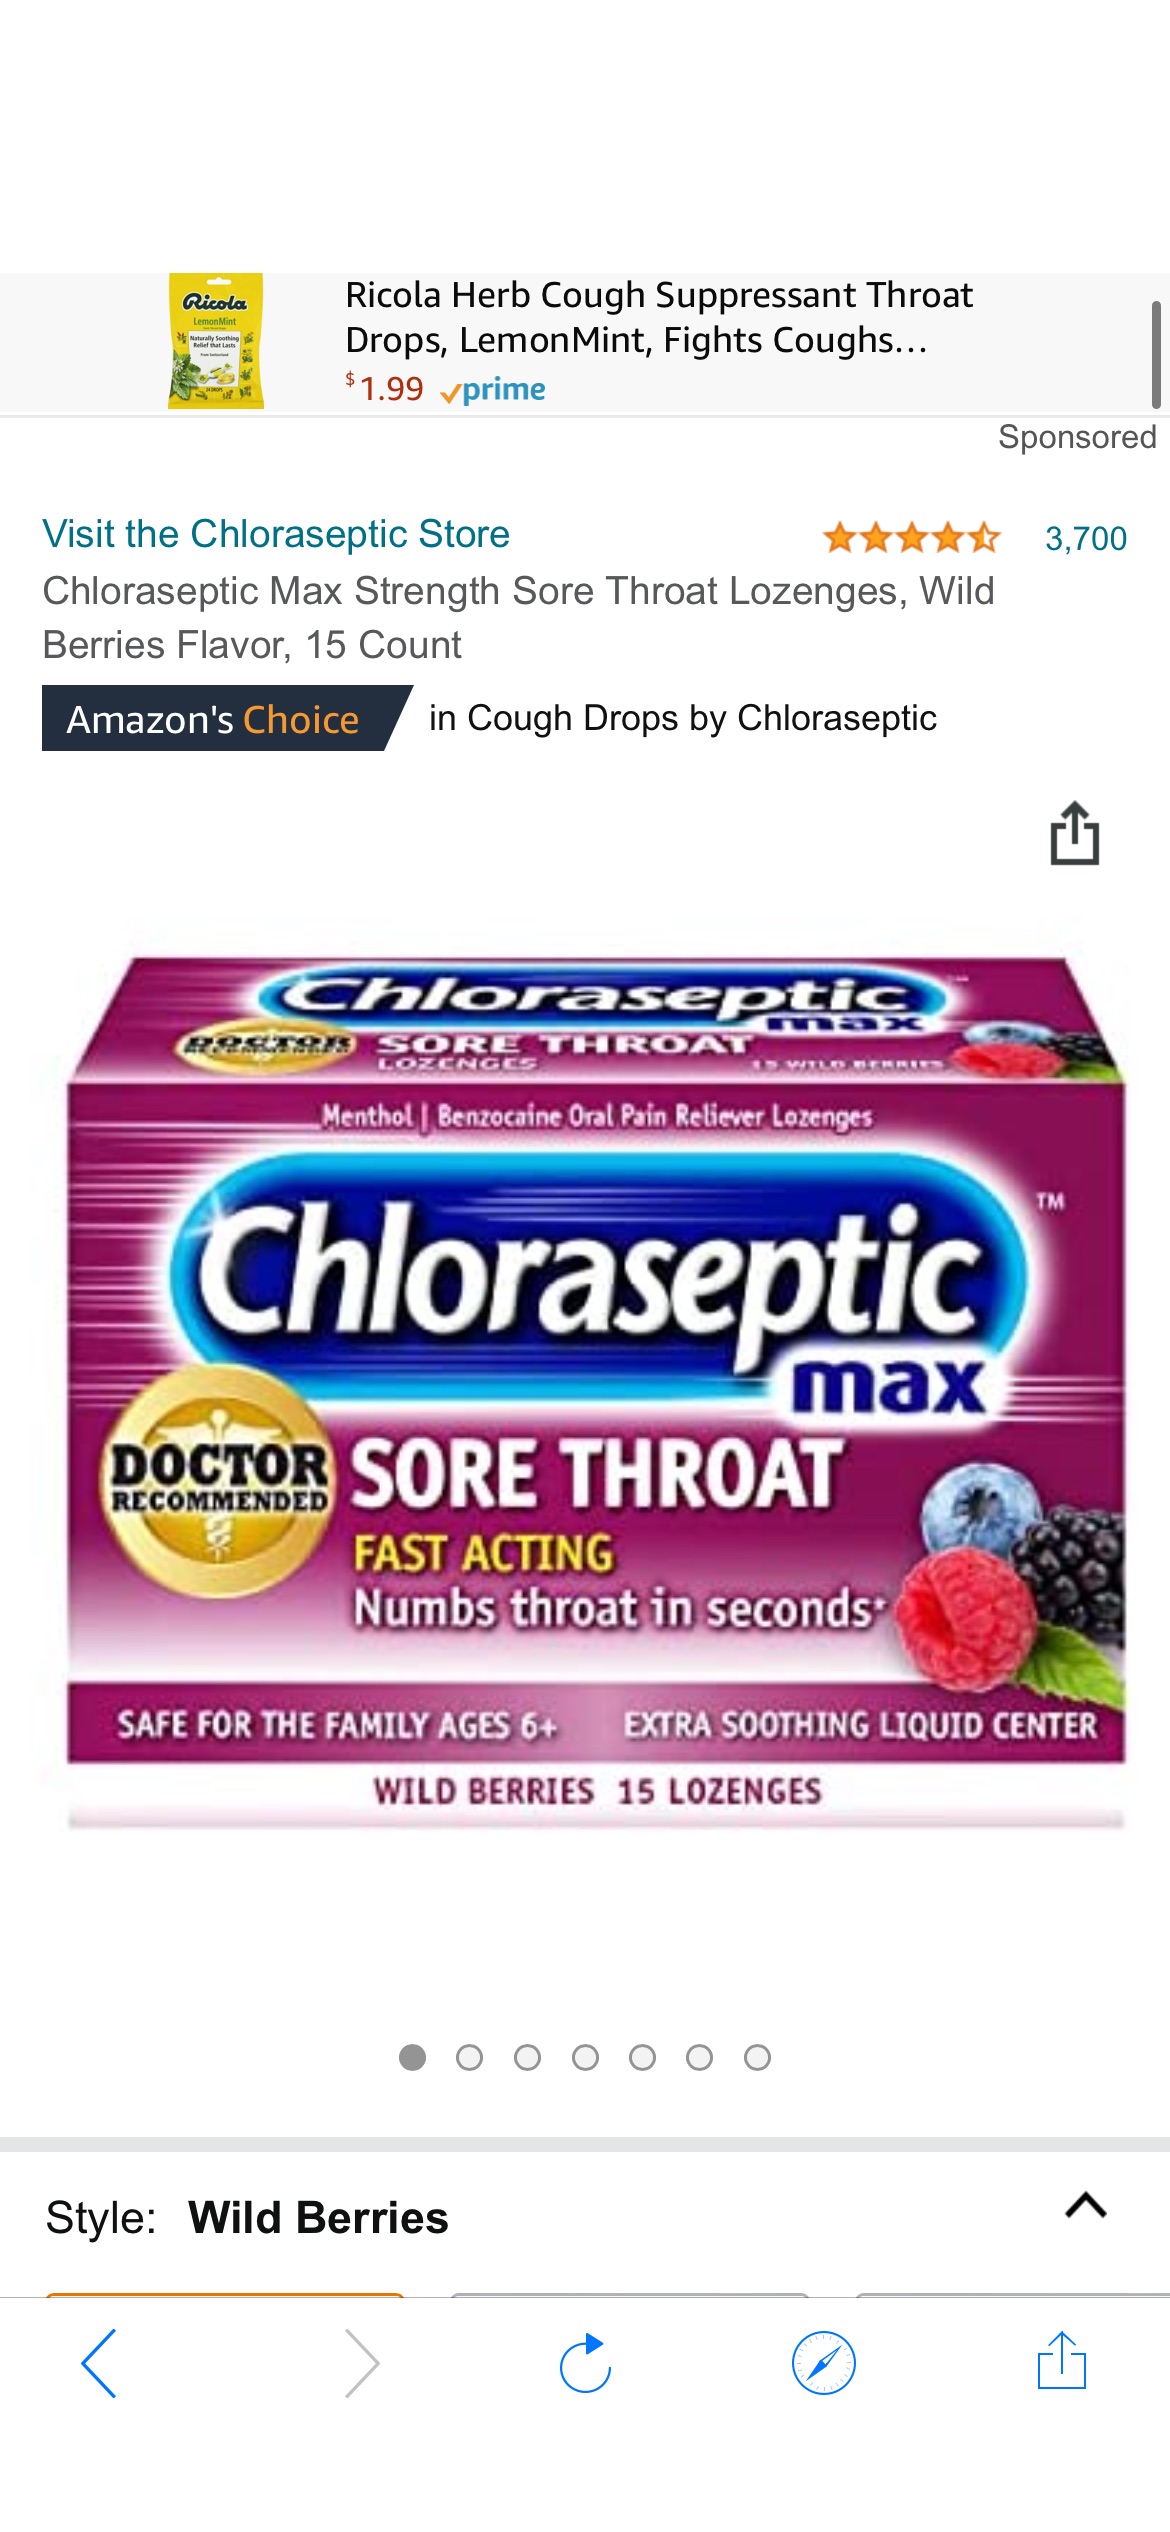 新冠必备Chloraseptic Max Strength Sore Throat Lozenges, Wild Berries Flavor, 15 Count 喉糖